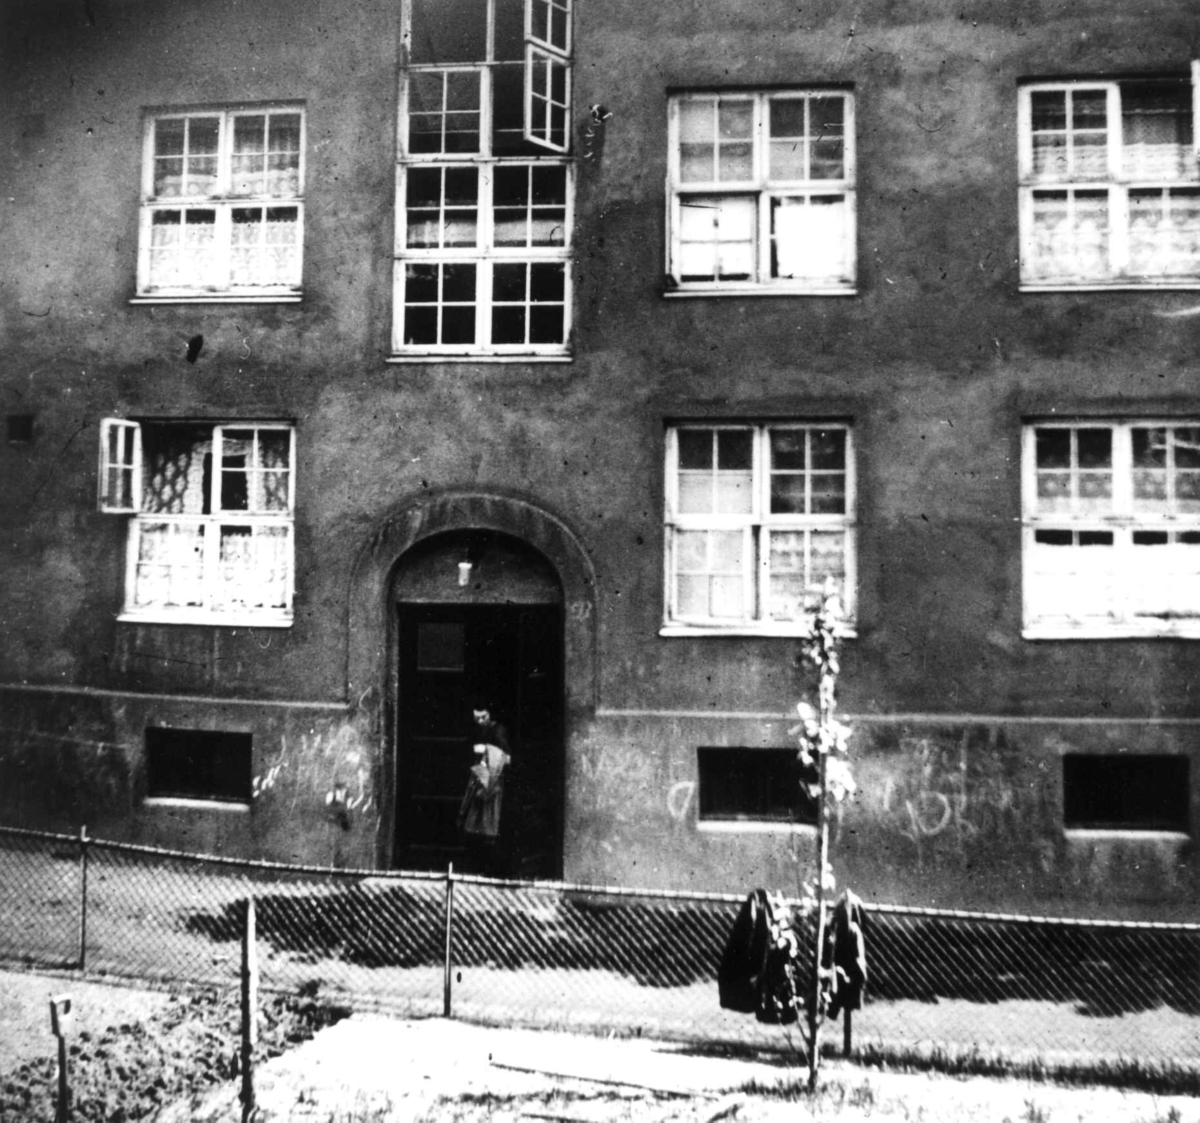 Bygård, murbygning, Rosenhoff, Oslo.
Fra boliginspektør Nanna Brochs boligundersøkelser i Oslo 1920-årene.